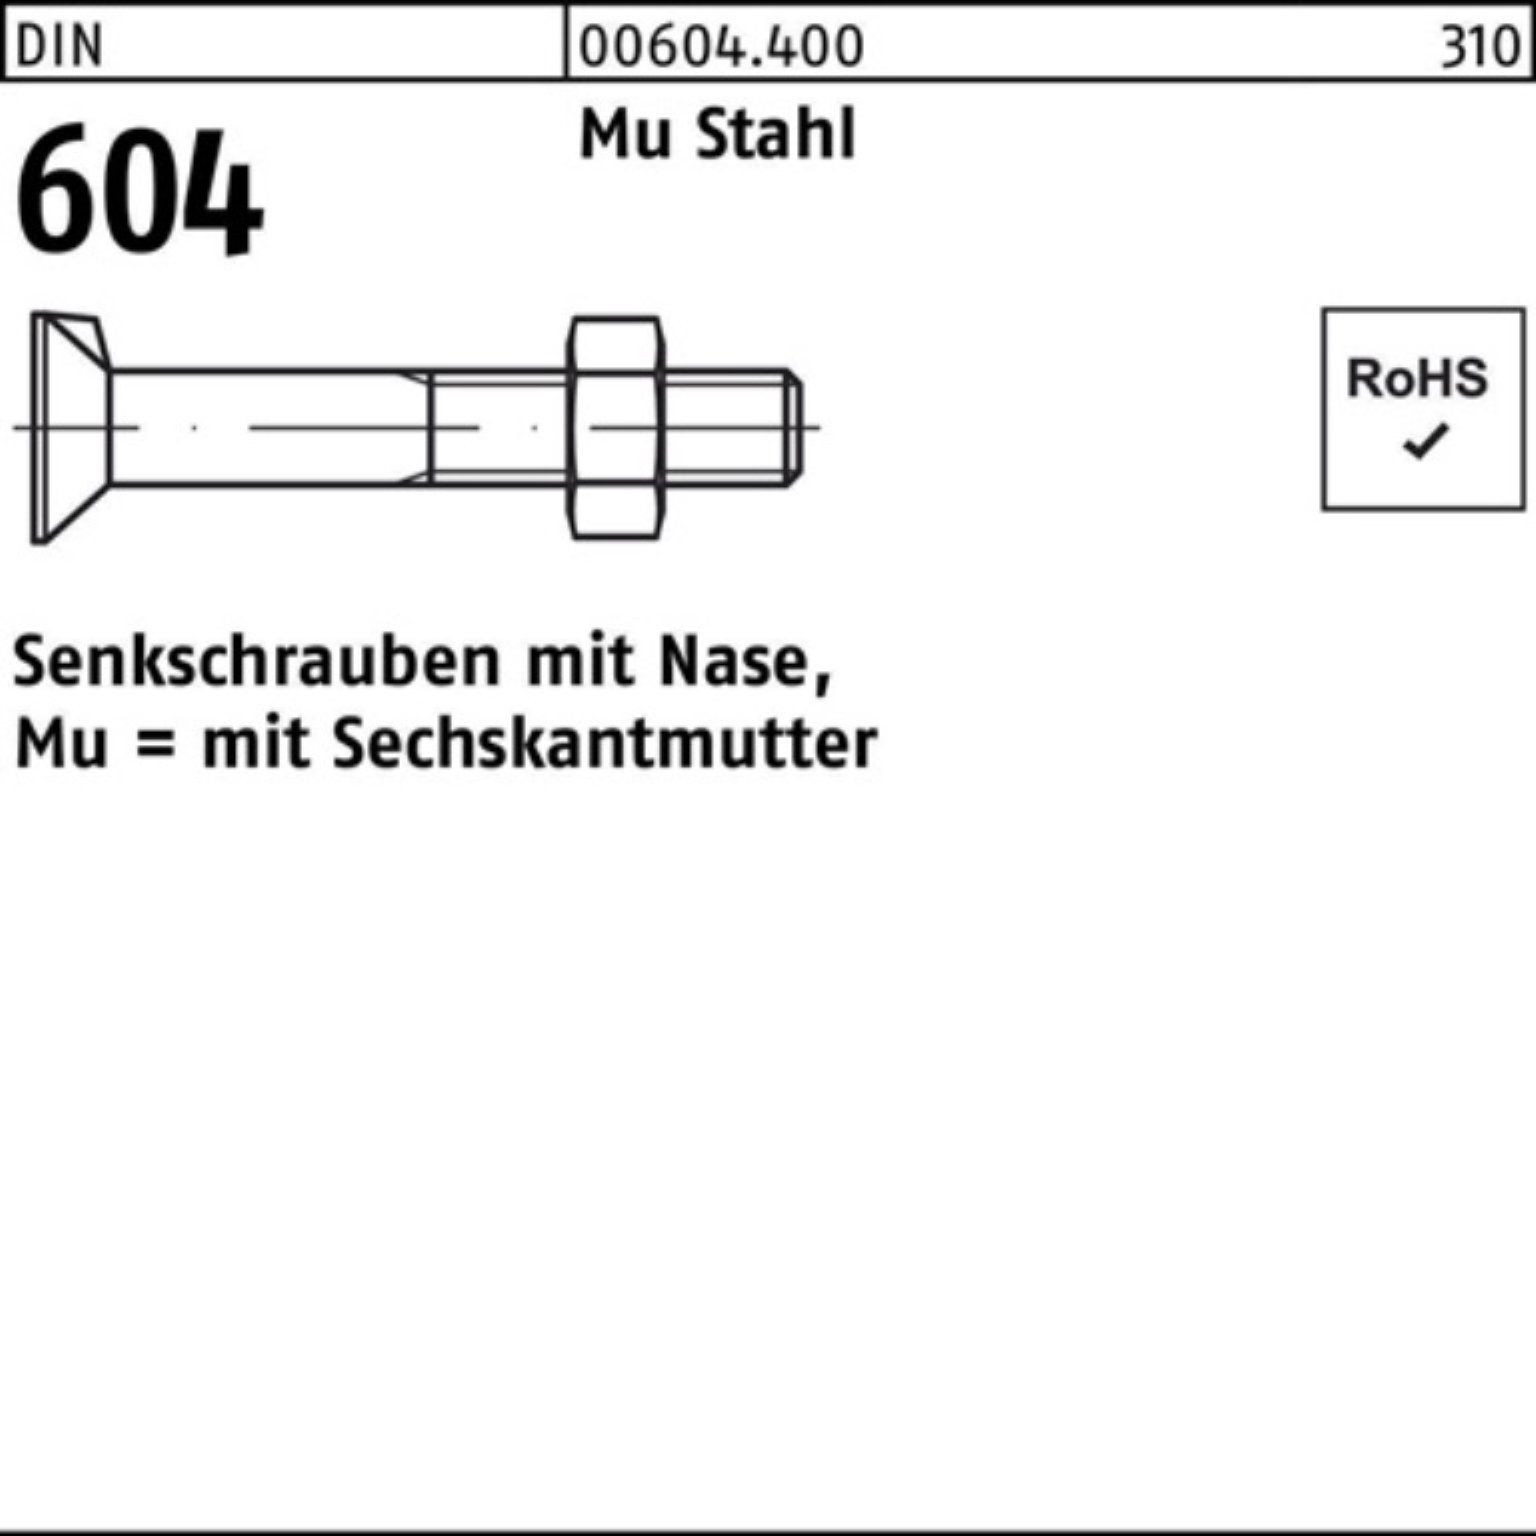 Reyher Senkschraube 100er Pack Senkschraube DIN 604 Nase/6-ktmutter M10x 50 Mu Stahl 4.6 1